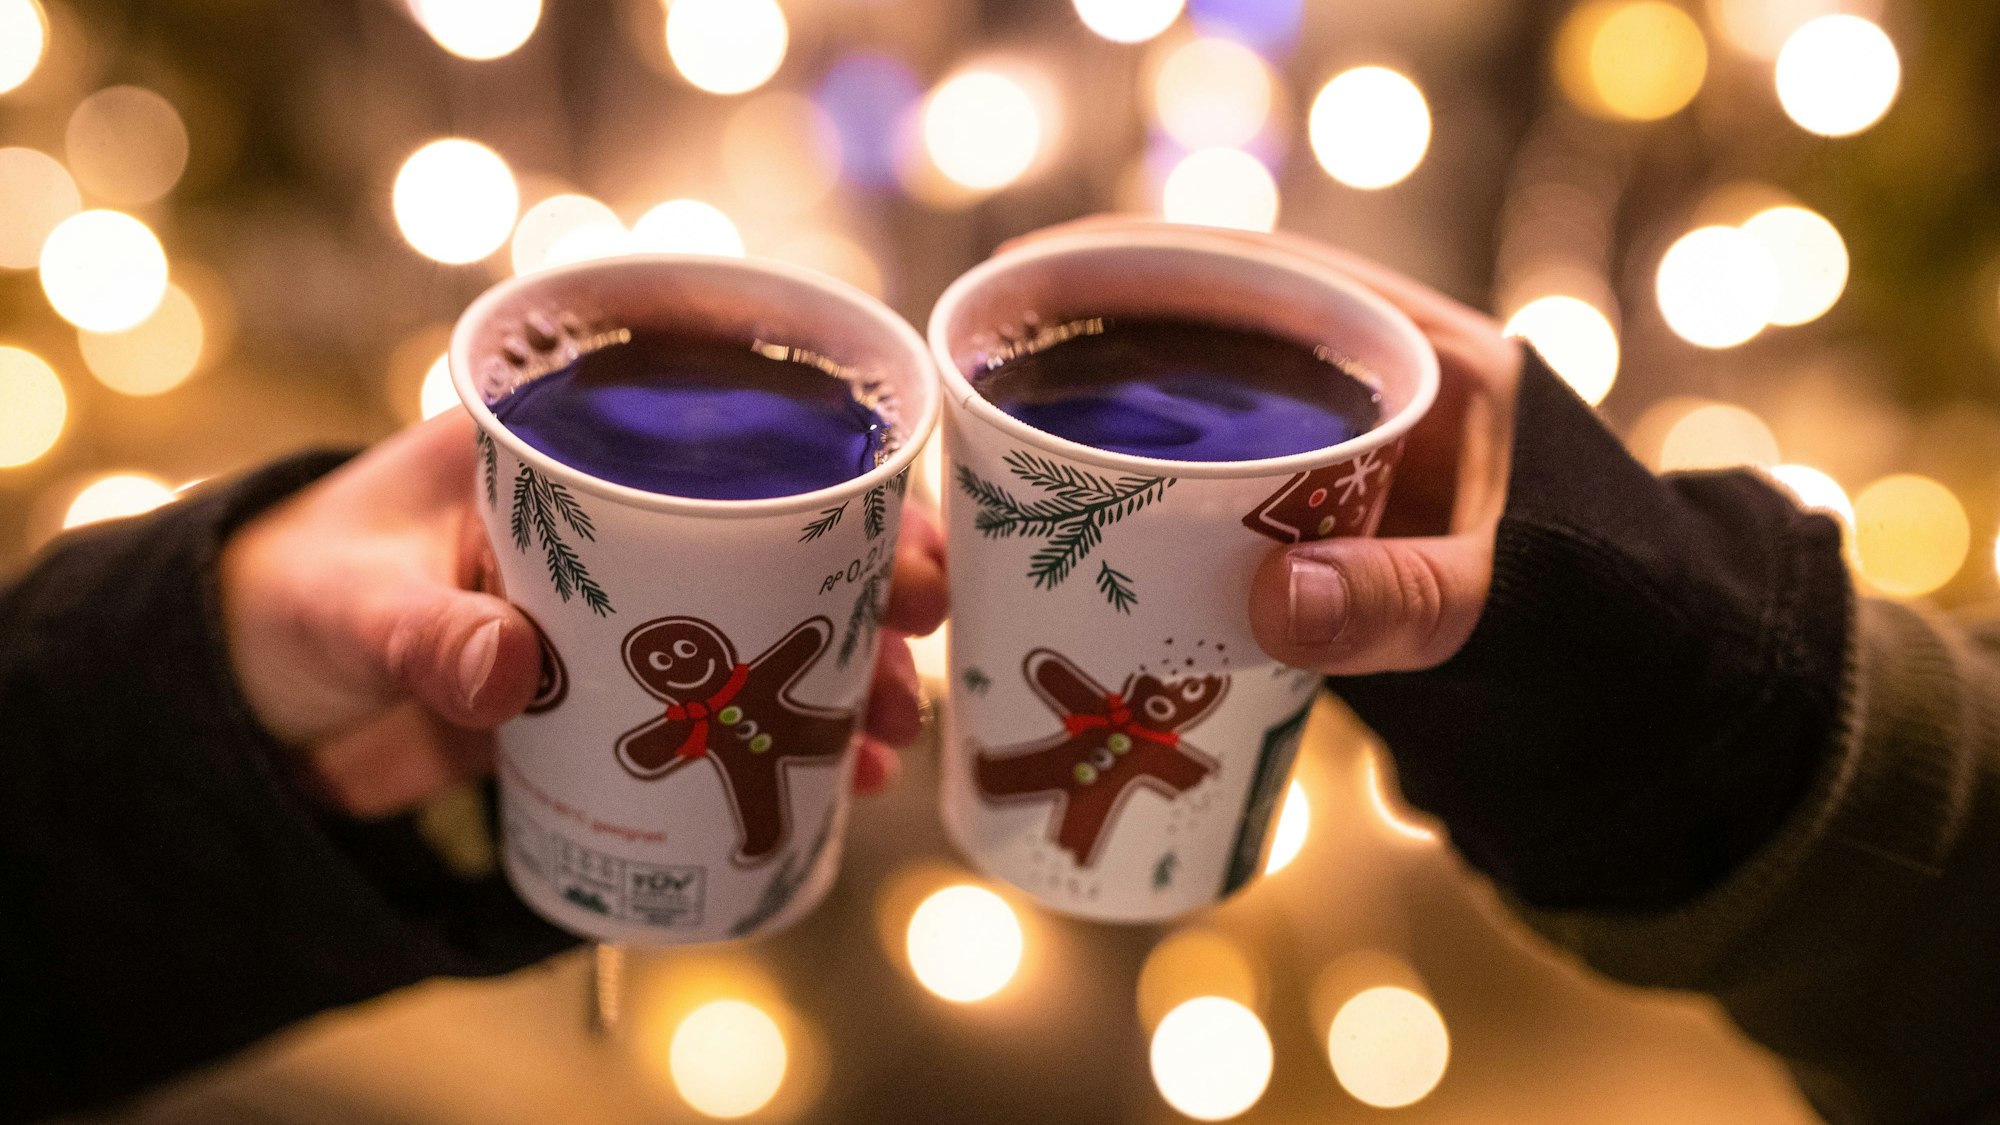 Zwei Menschen stoßen mit Glühwein in Bechern auf dem Weihnachtsmarkt an.